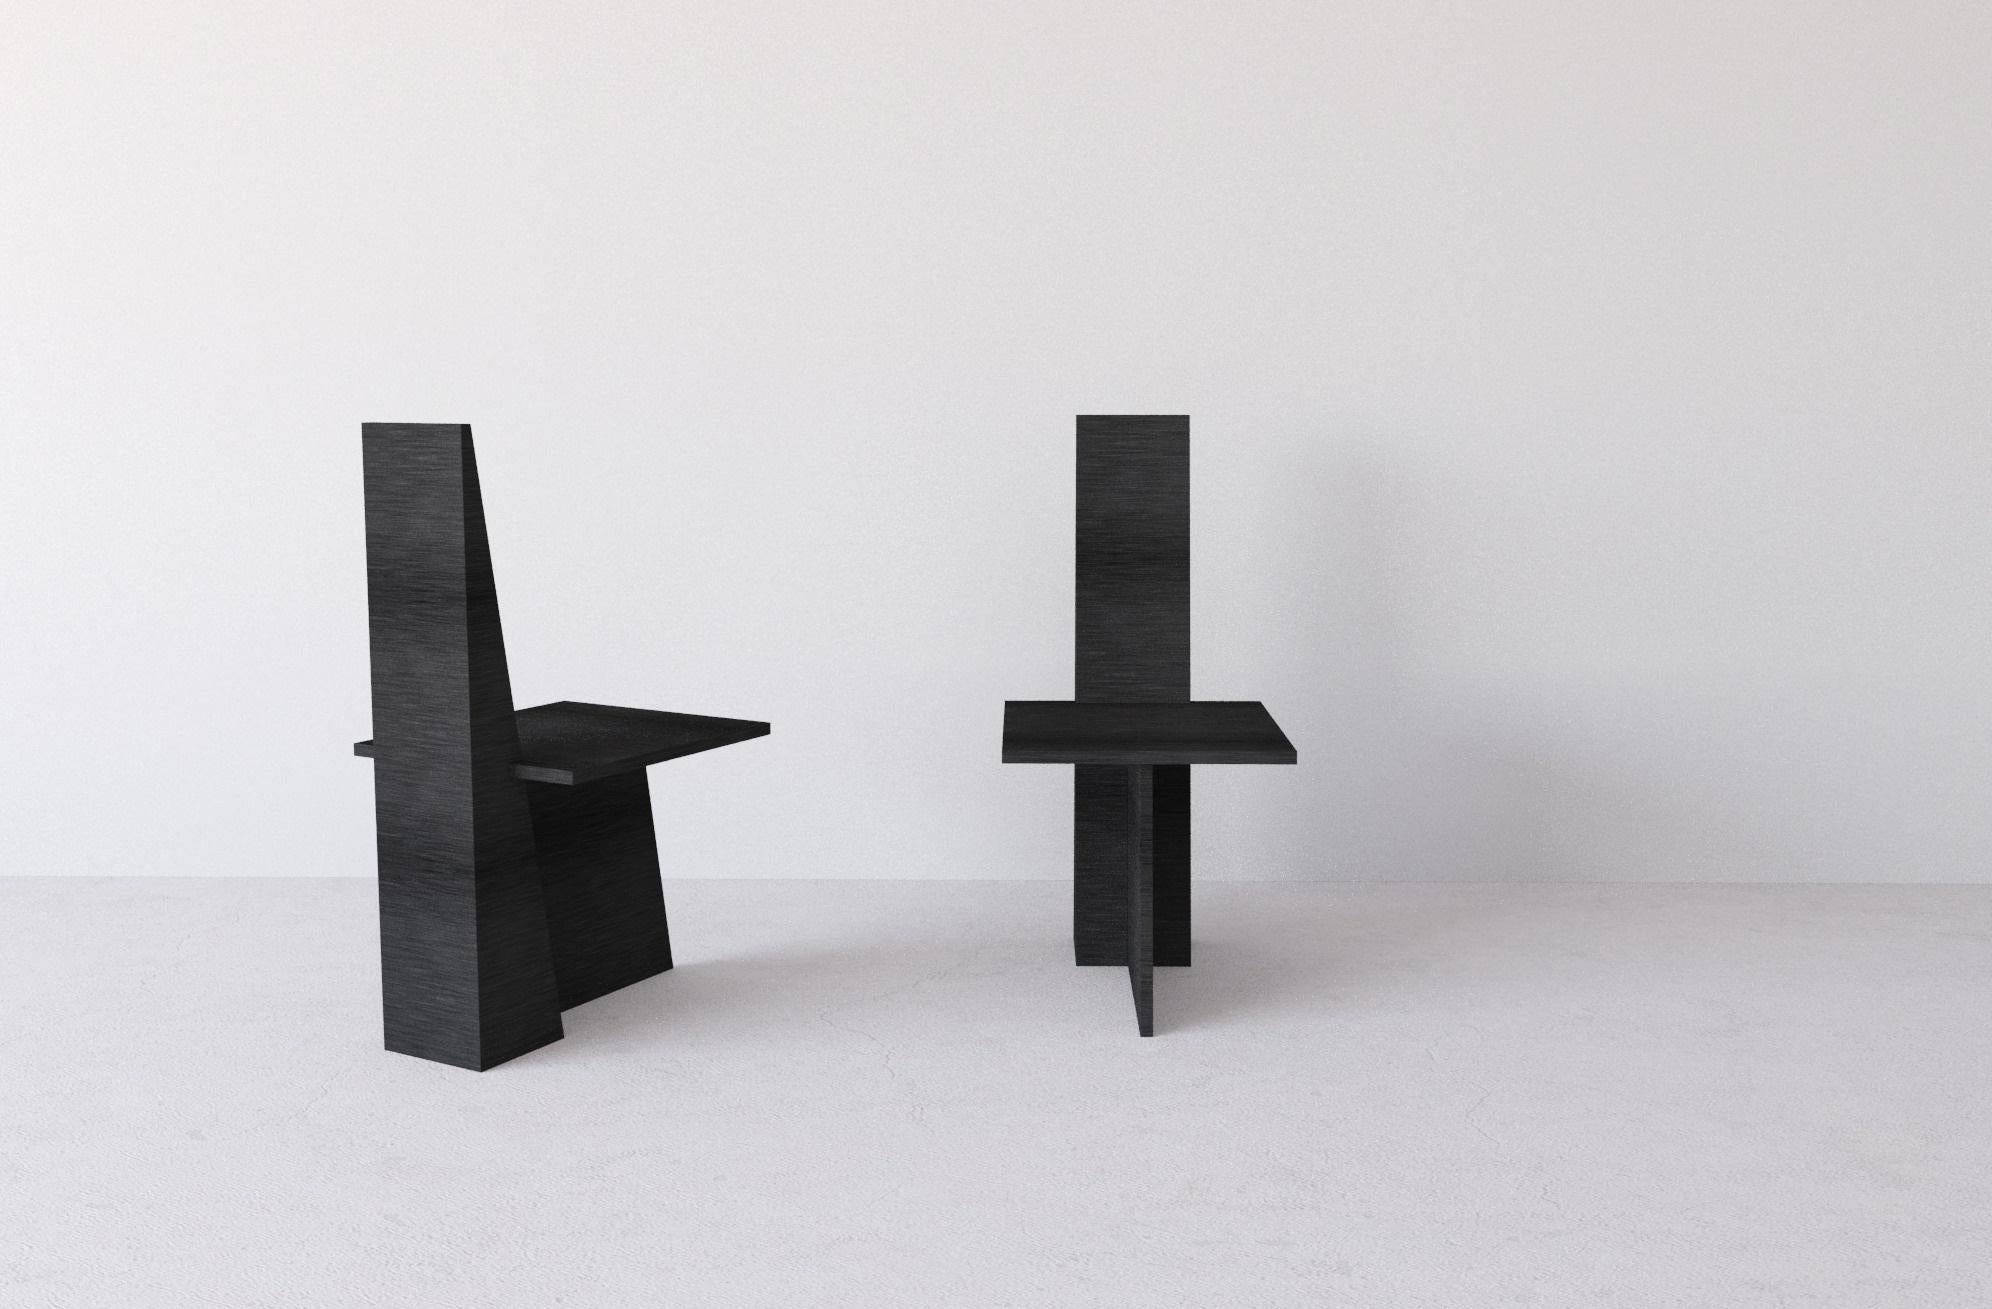 Ensemble de 2 chaises à ancre de Morgane Avéus
Dimensions : D 45 x L 55 x H 95 cm chacun.
Matériaux : Chêne teinté.

La chaise Anchor a une allure très graphique combinant des lignes épurées et des angles forts.
Il fonctionne bien tout seul comme